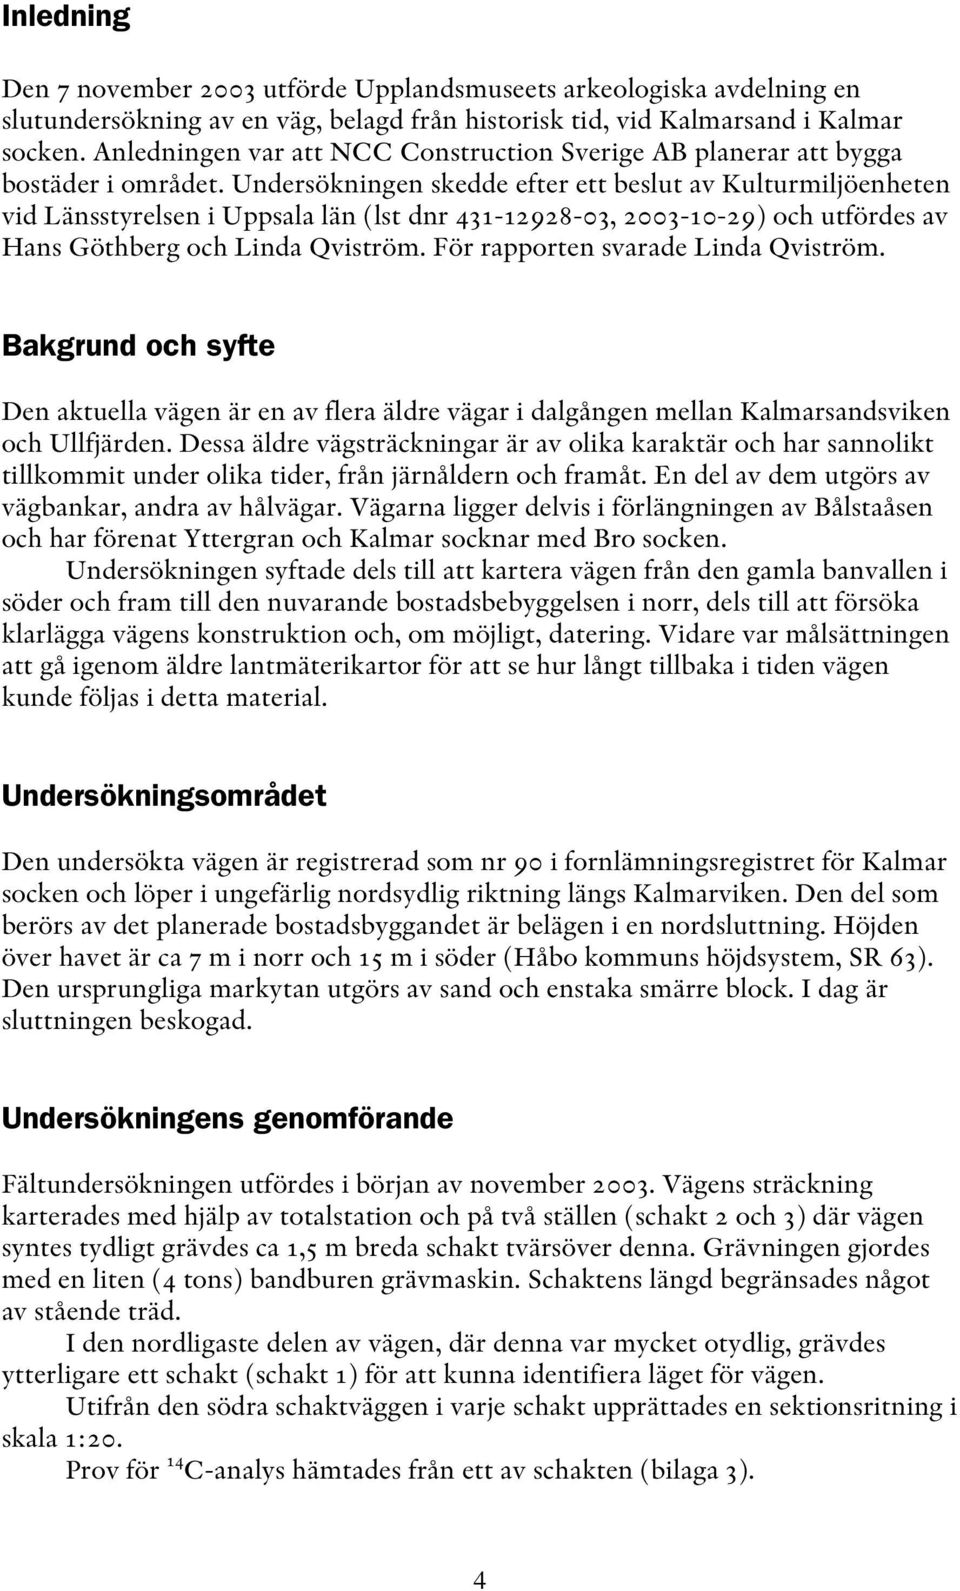 Undersökningen skedde efter ett beslut av Kulturmiljöenheten vid Länsstyrelsen i Uppsala län (lst dnr 431-12928-03, 2003-10-29) och utfördes av Hans Göthberg och Linda Qviström.